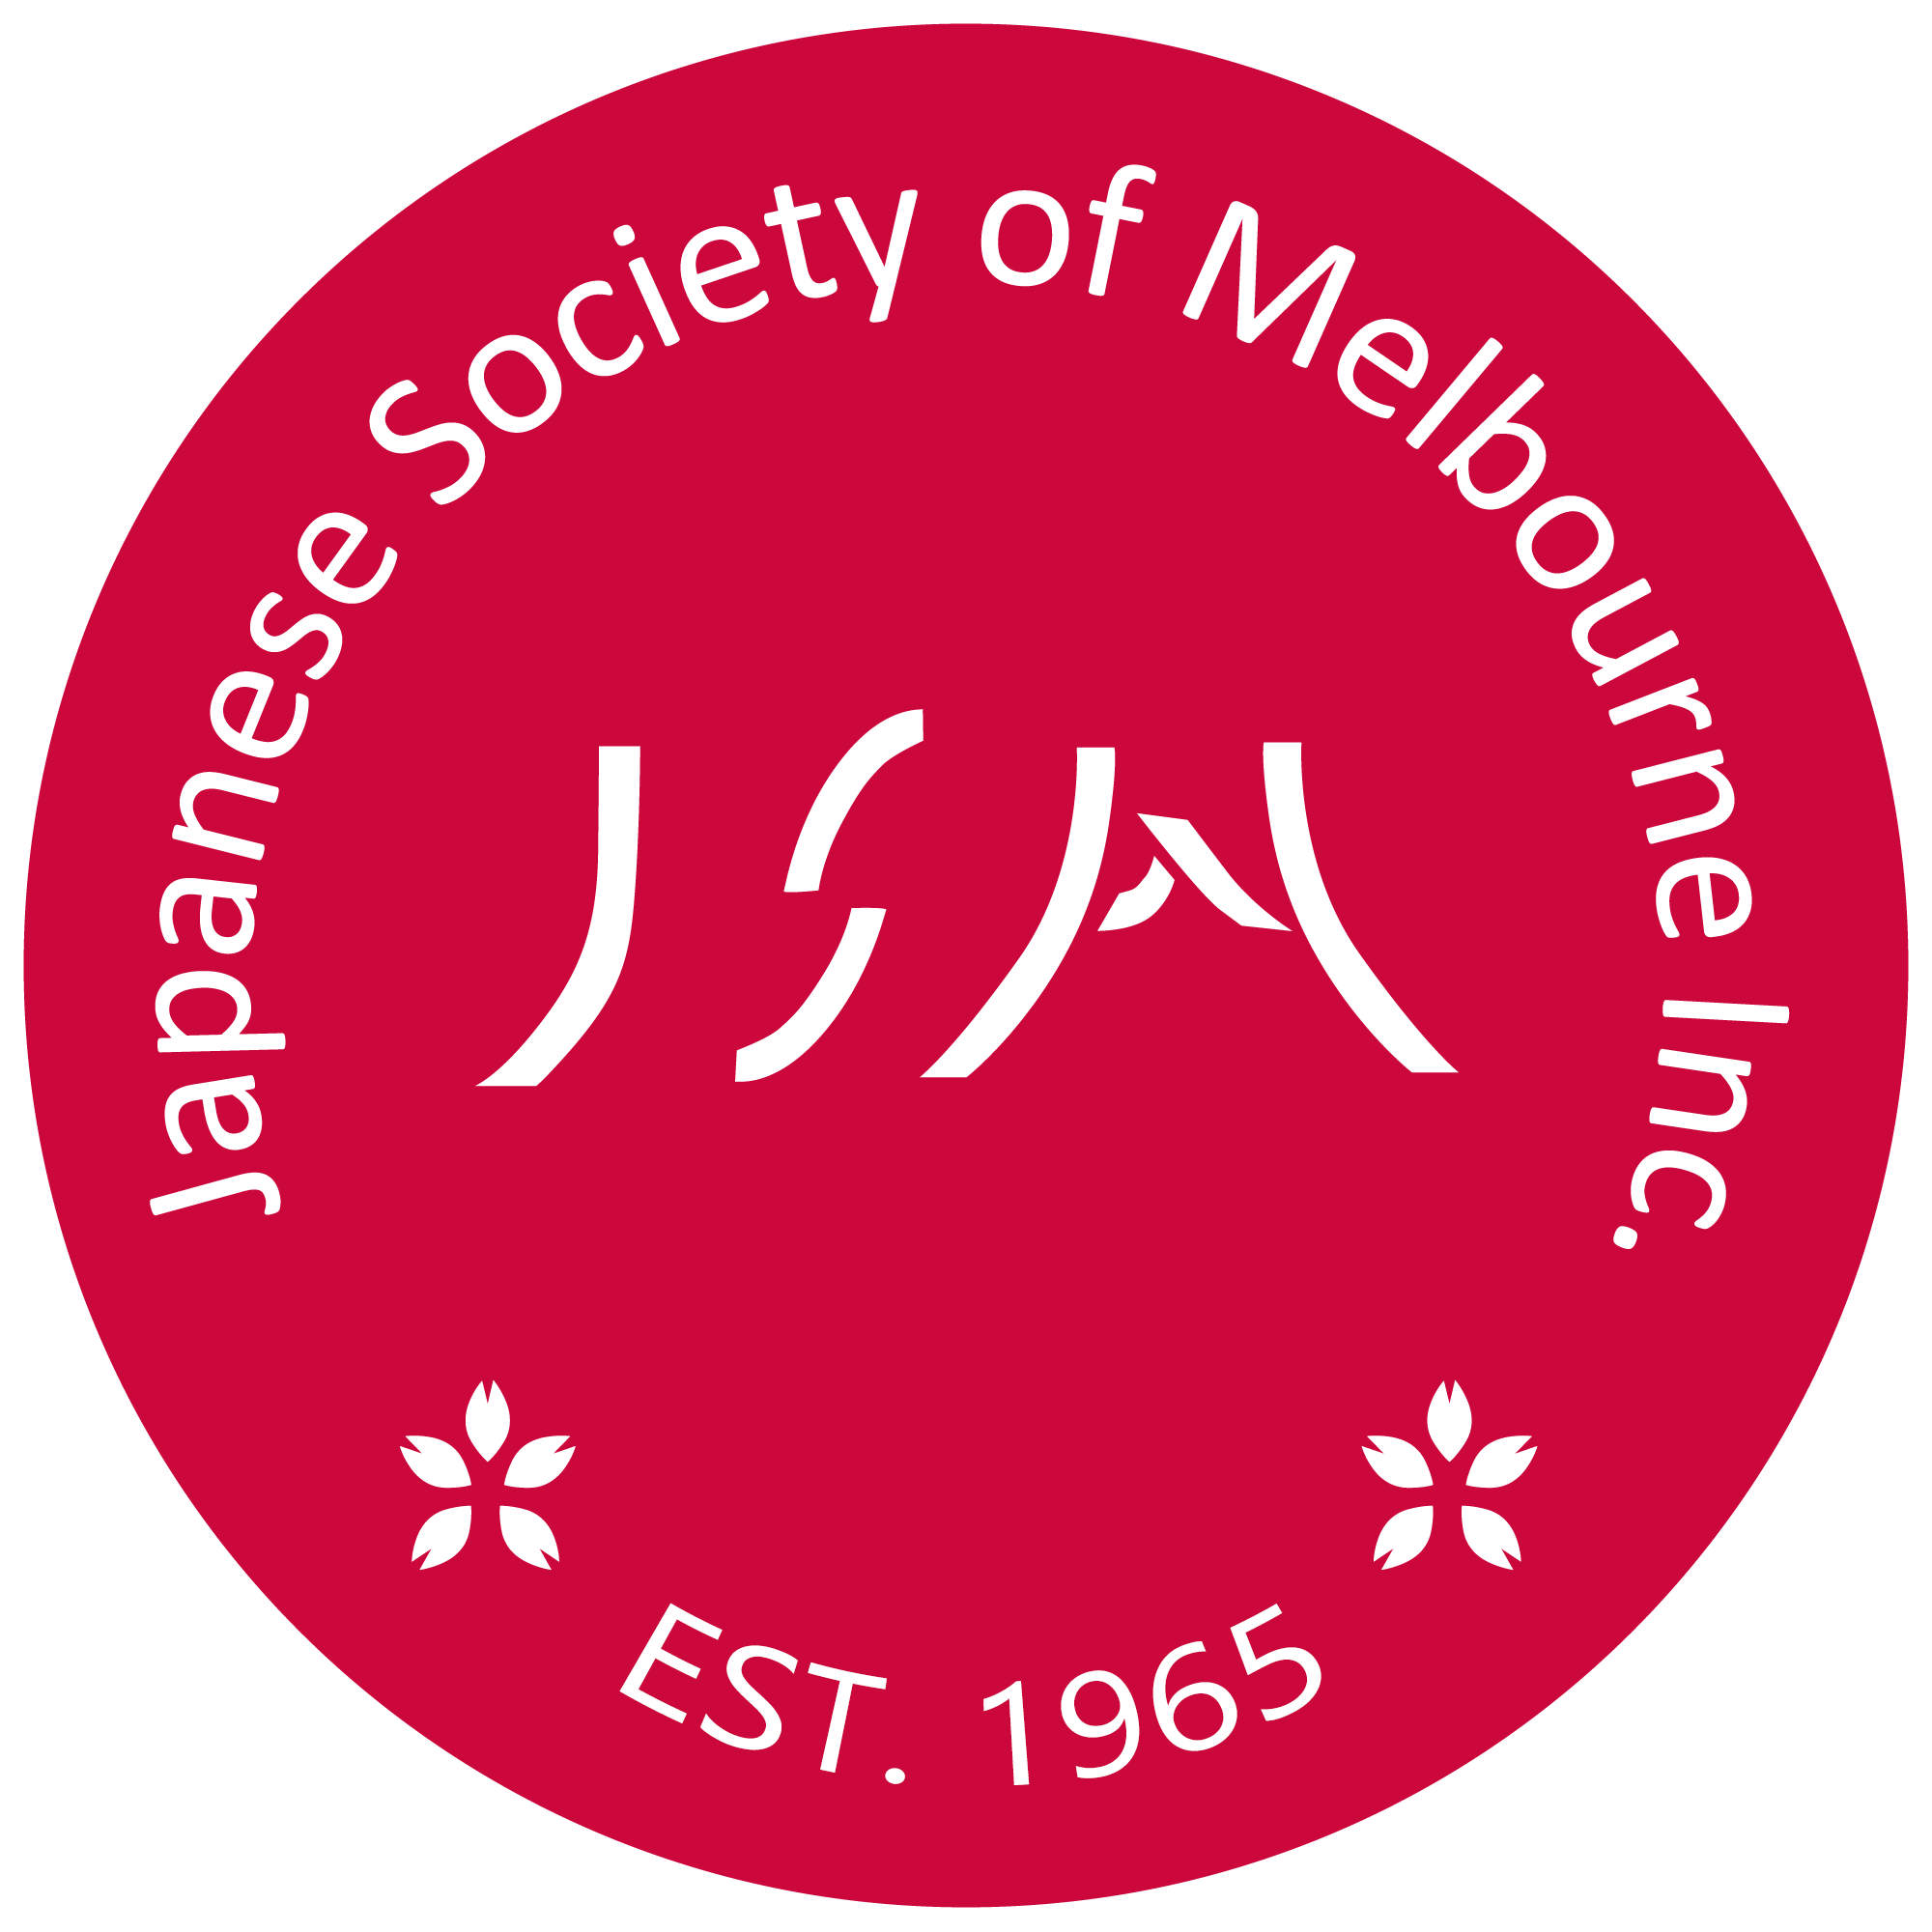 JSM logo